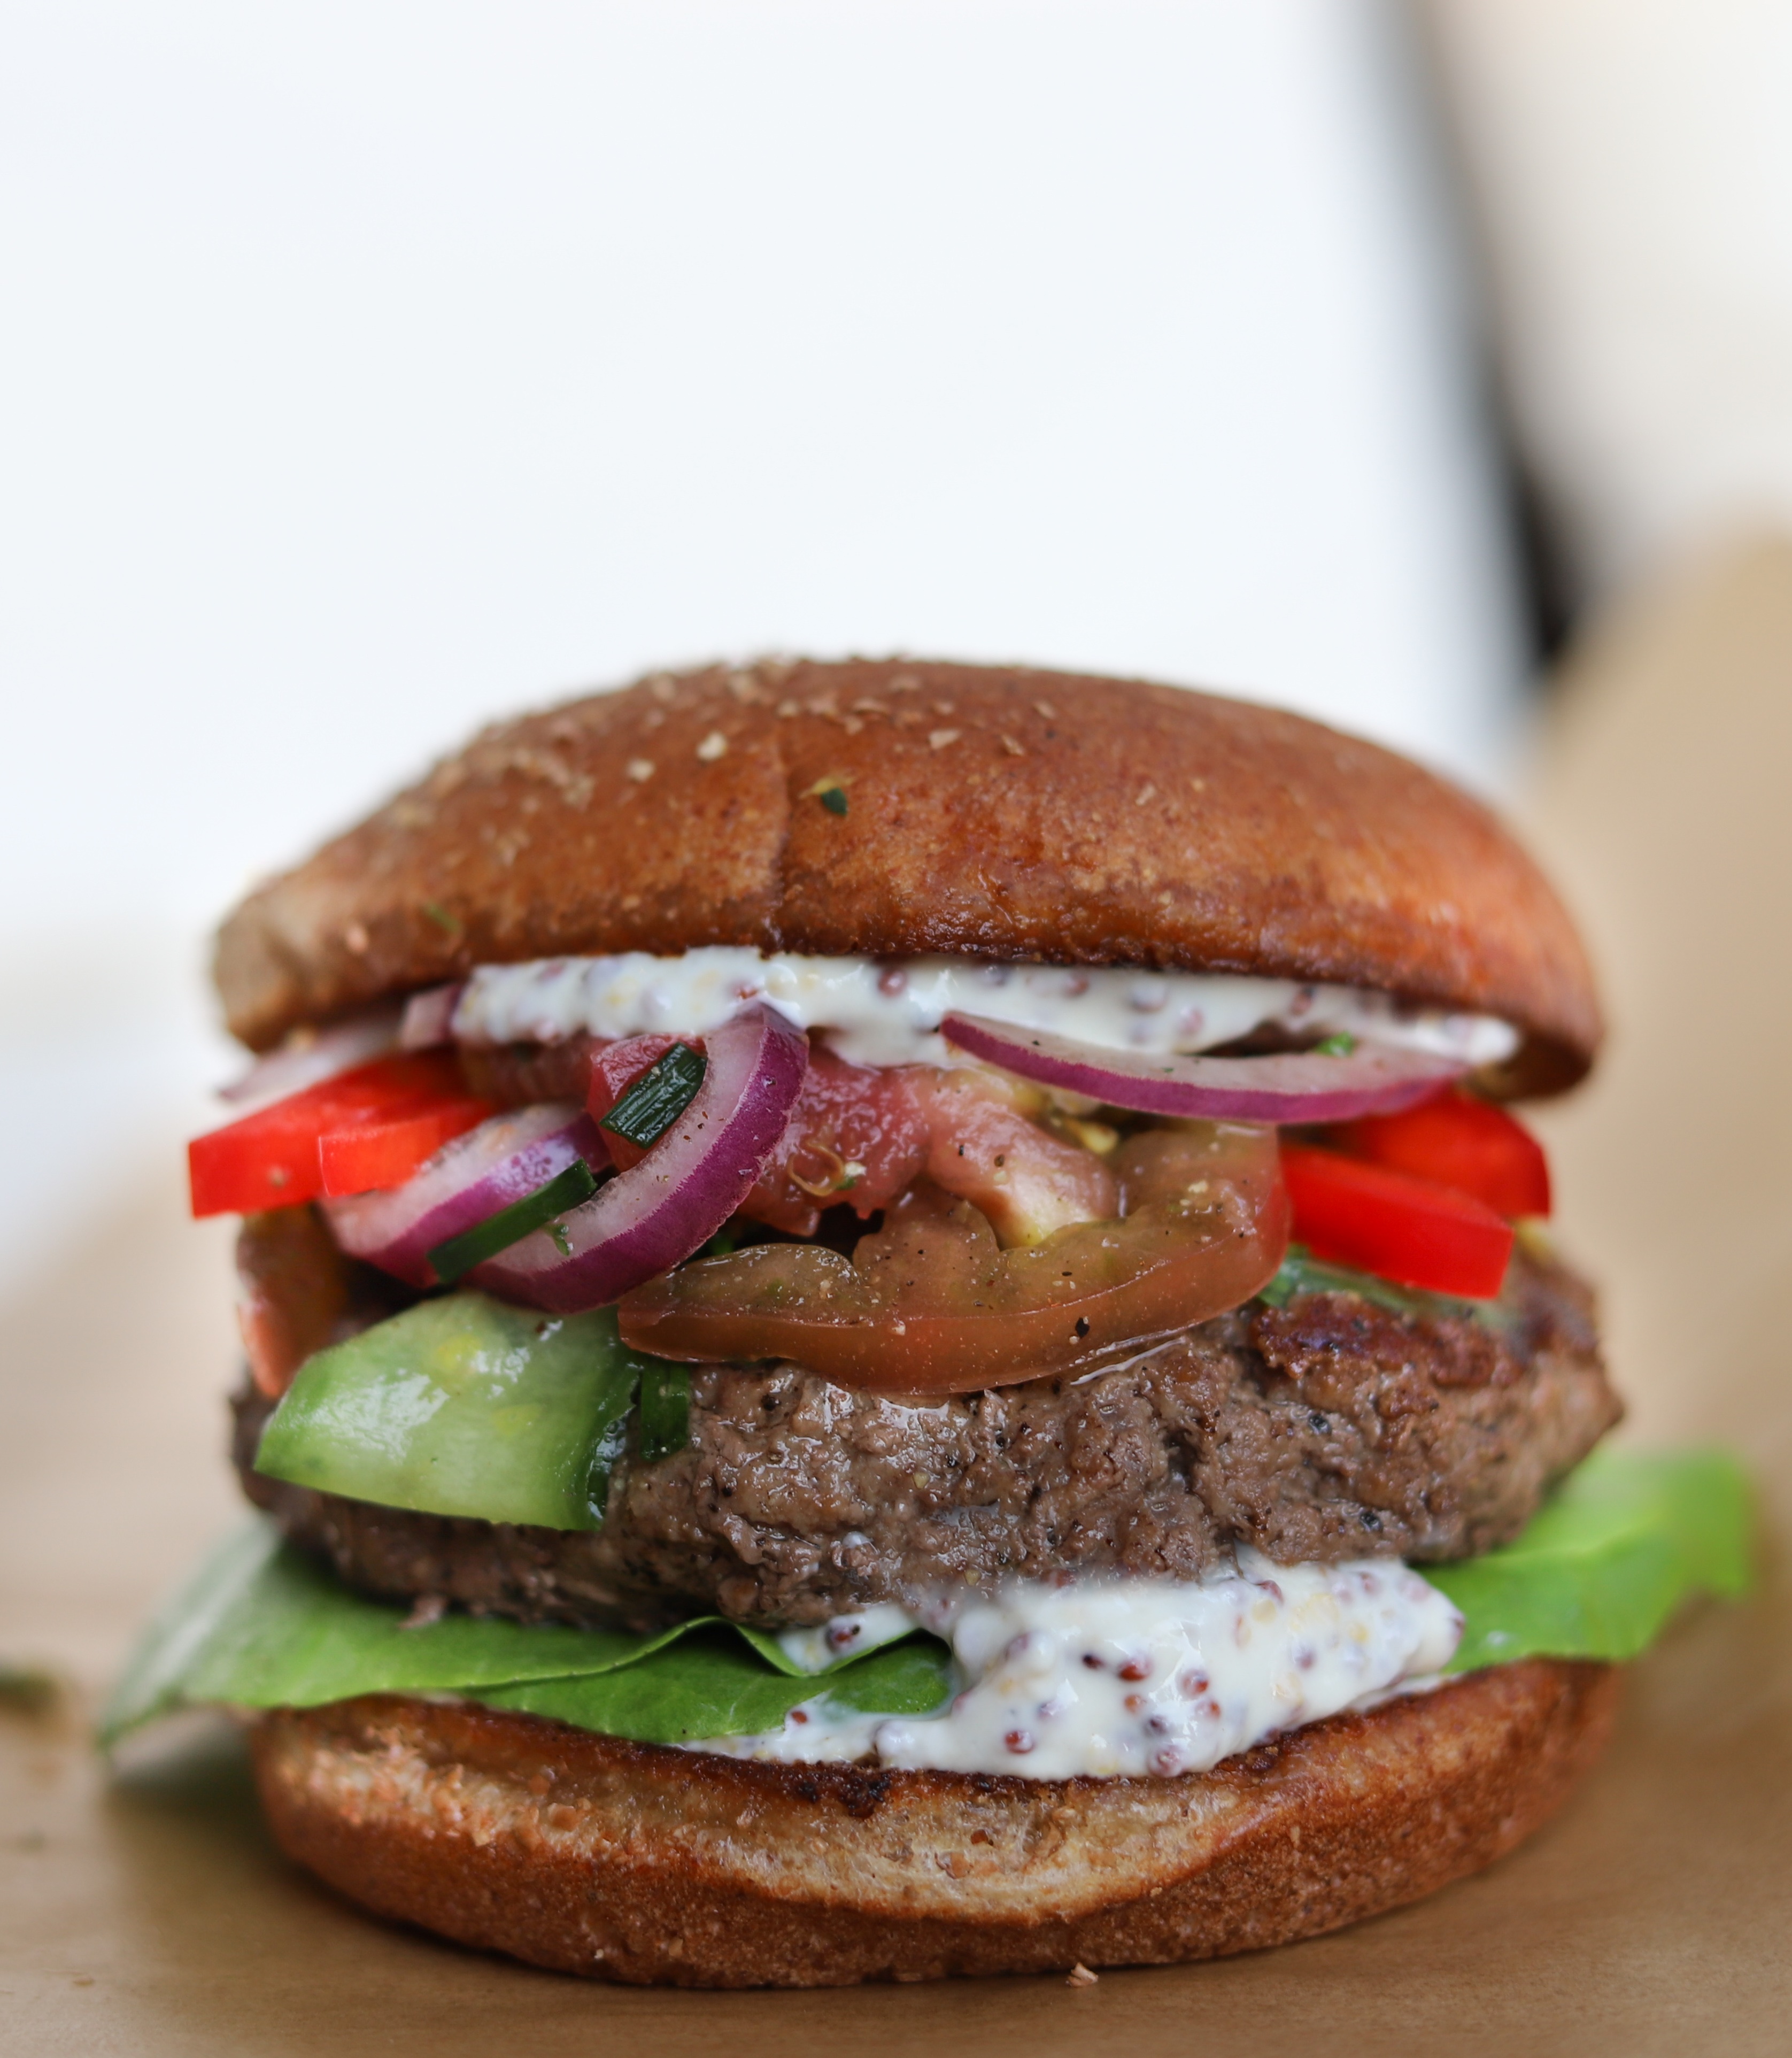 The Aussie Grass-Fed Beef 'Better Burger'